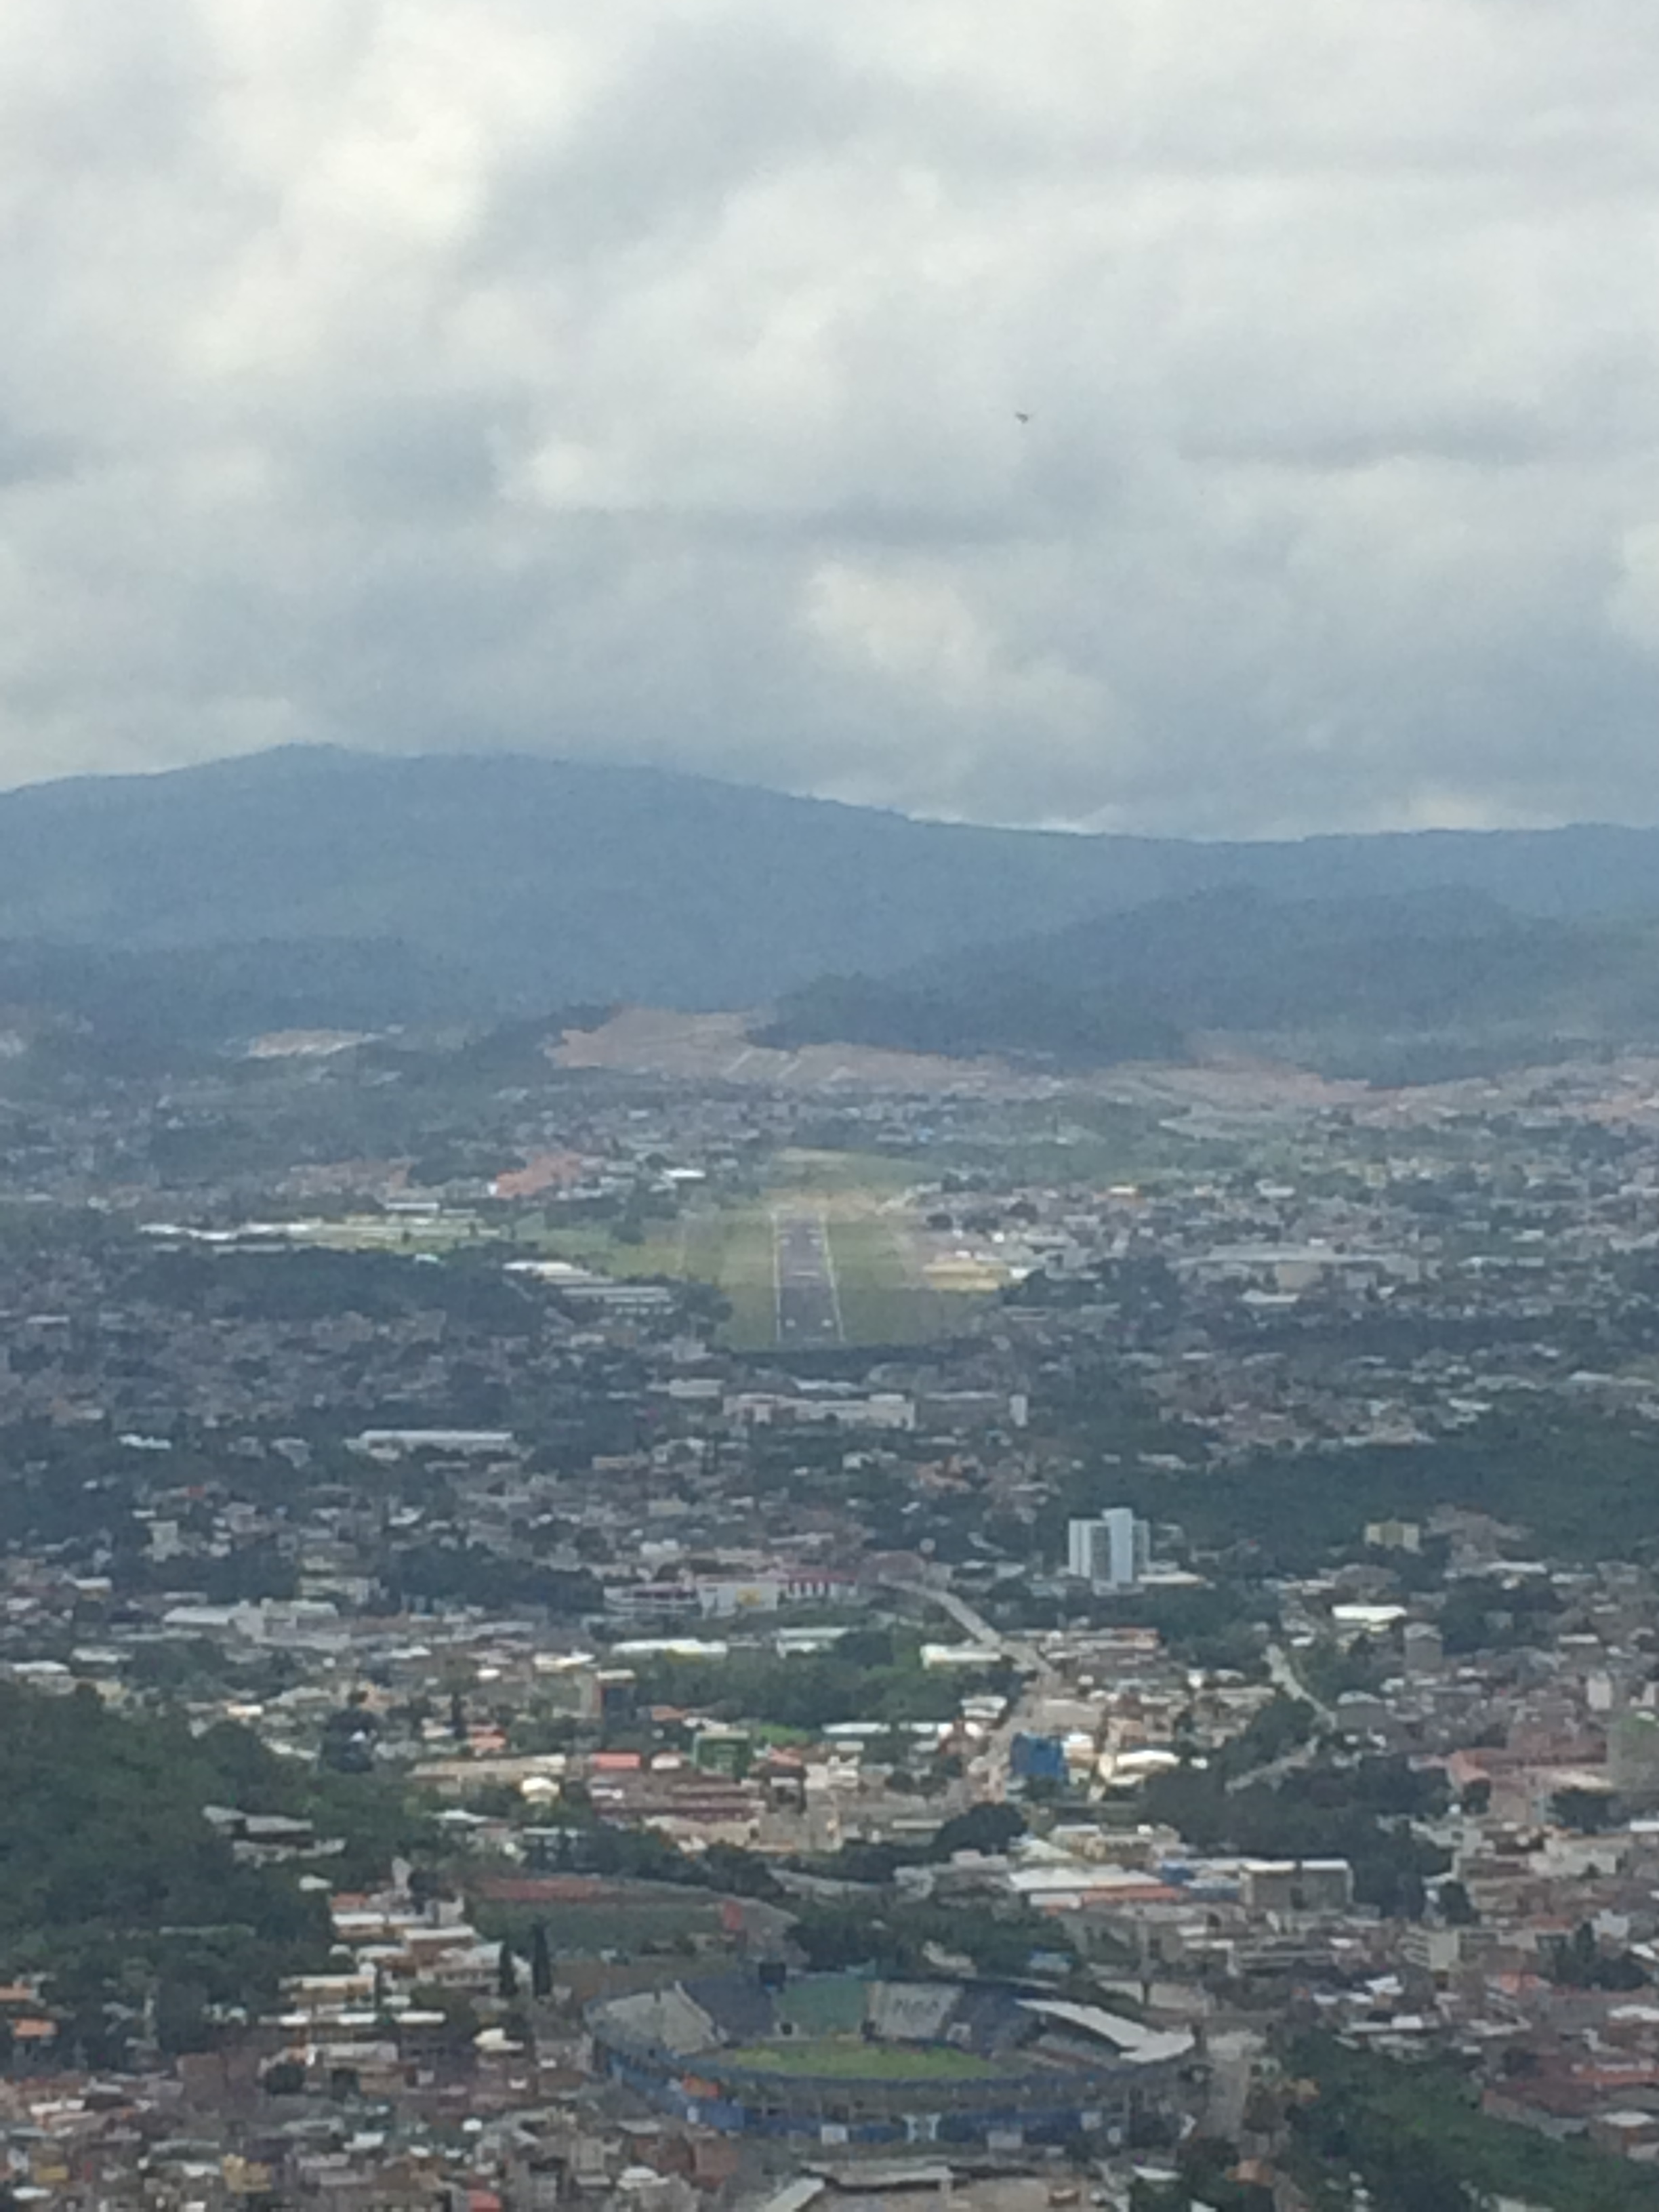 City of Tegucigalpa, Honduras